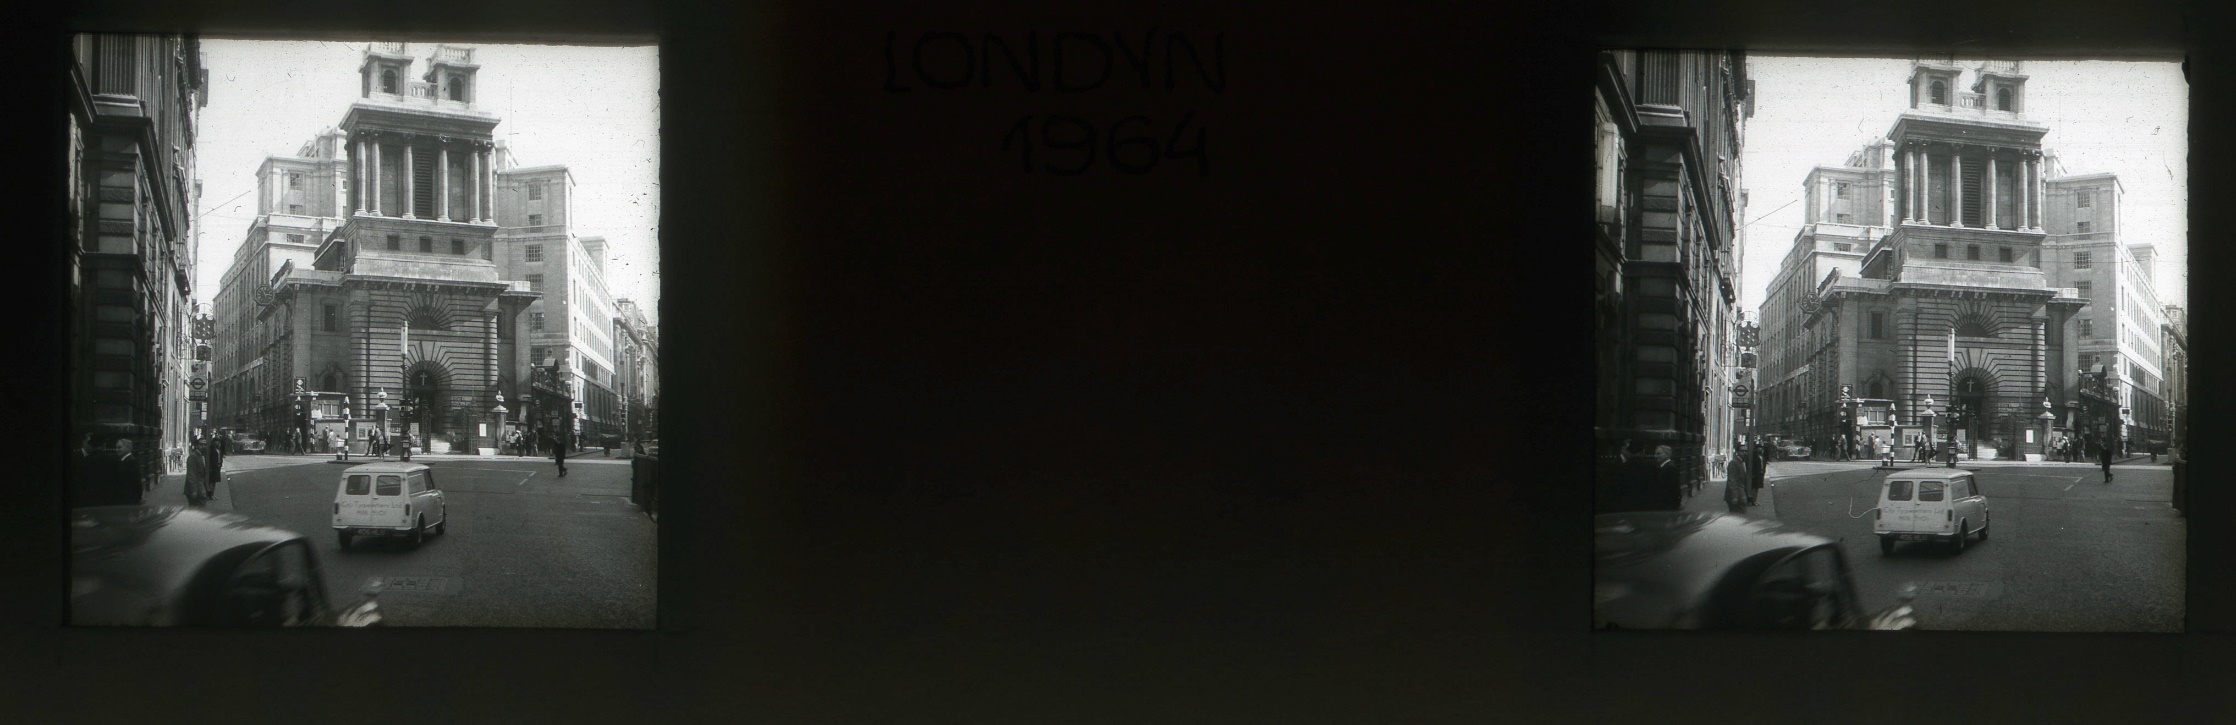 Zbigniew Szczypka, Tower Bridge, Londyn 1964 (źródło: materiały prasowe organizatora)